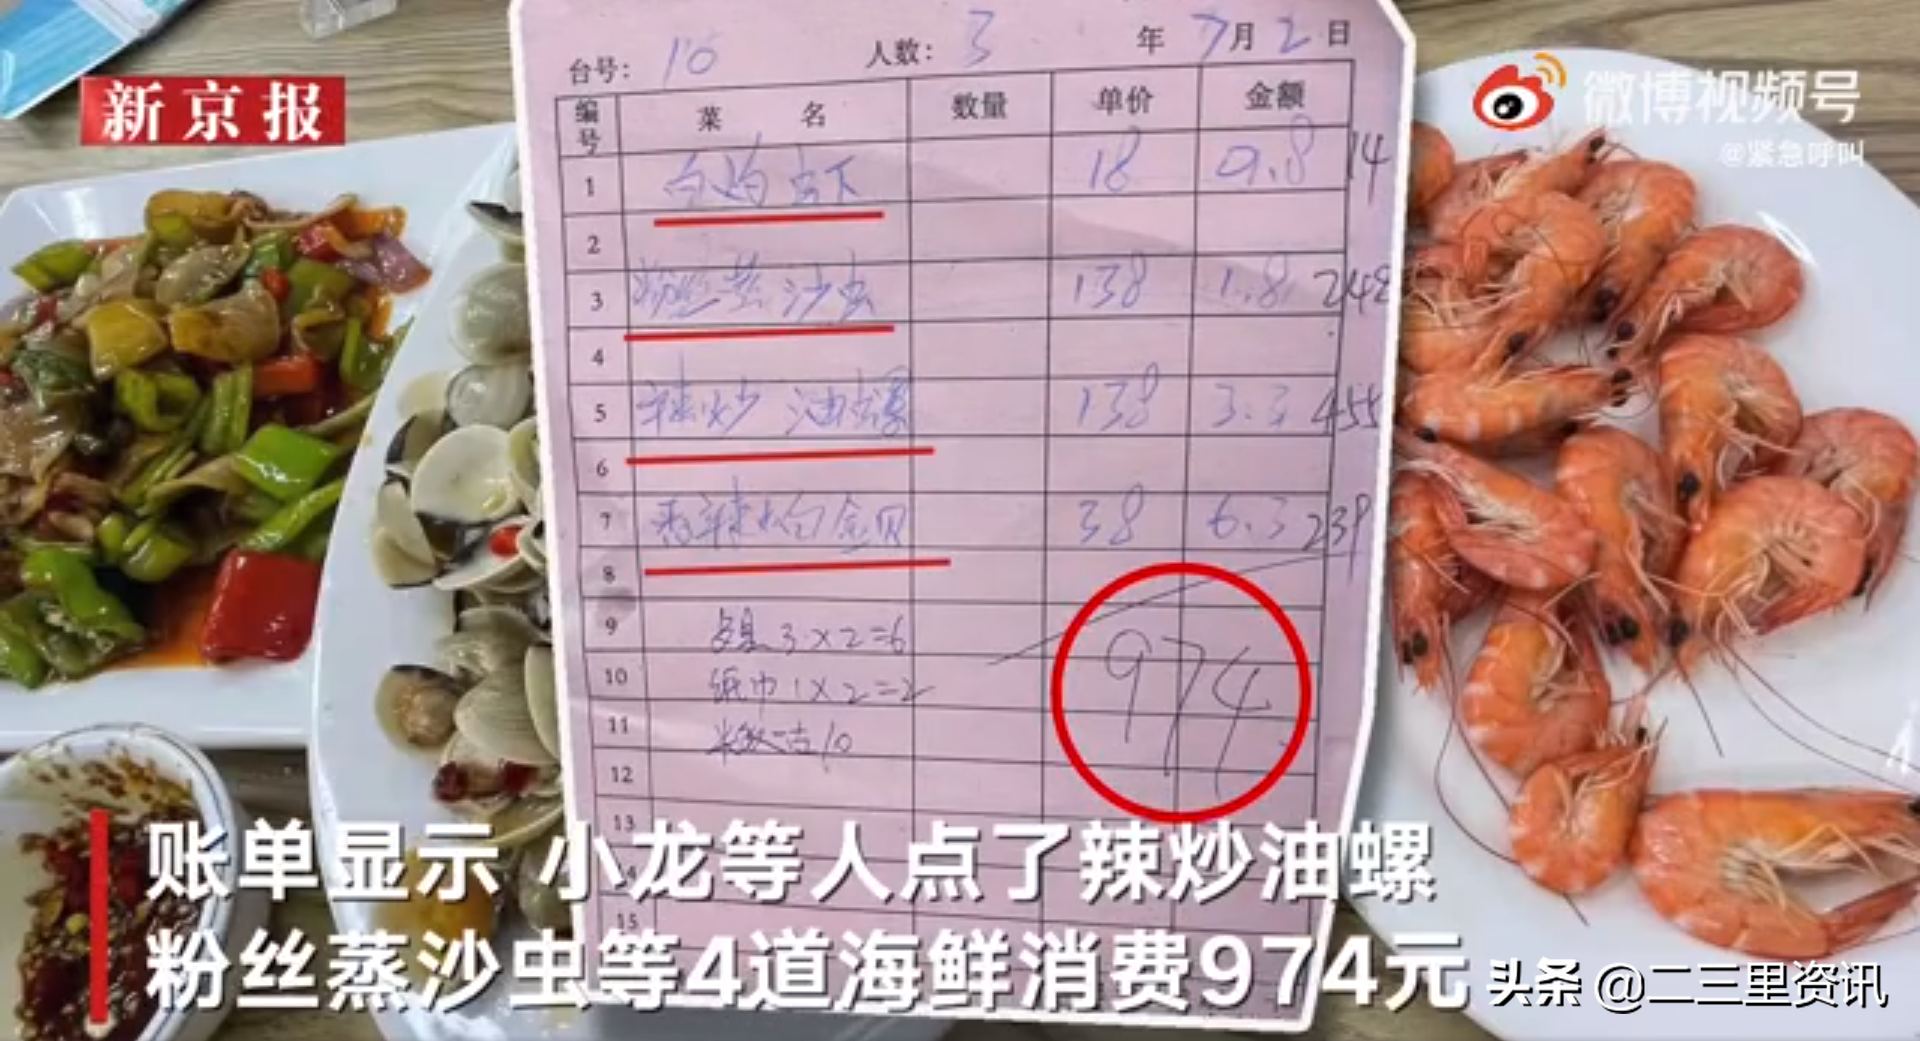 游客点4道菜花费近千元怀疑被宰，市监局称将介入核查